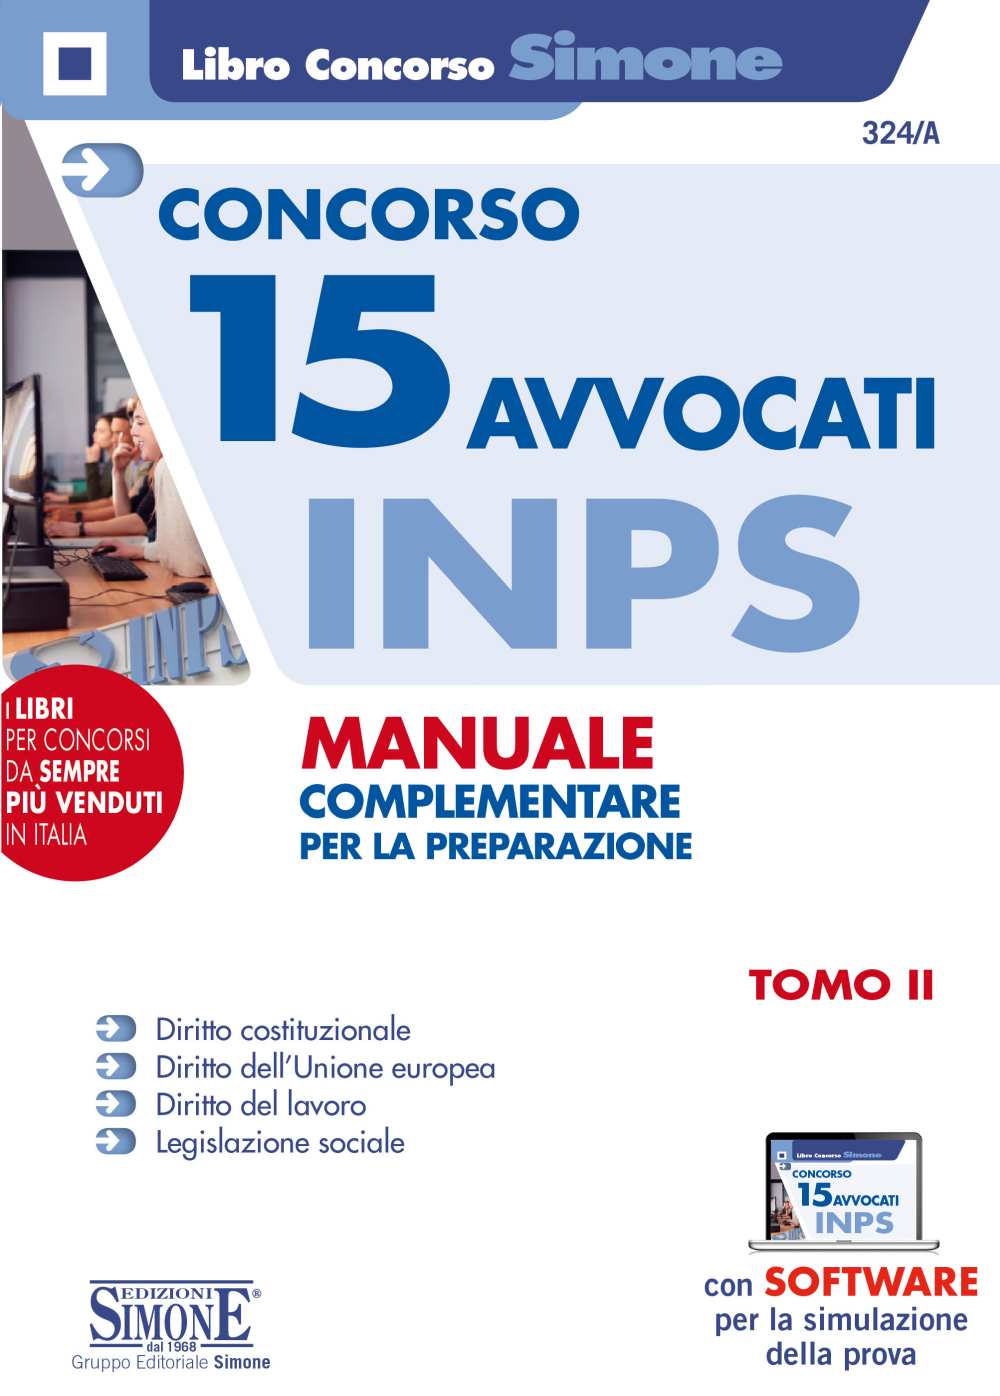 Concorso 15 Avvocati INPS - Manuale complementare per la preparazione - Tomo II - 324/A